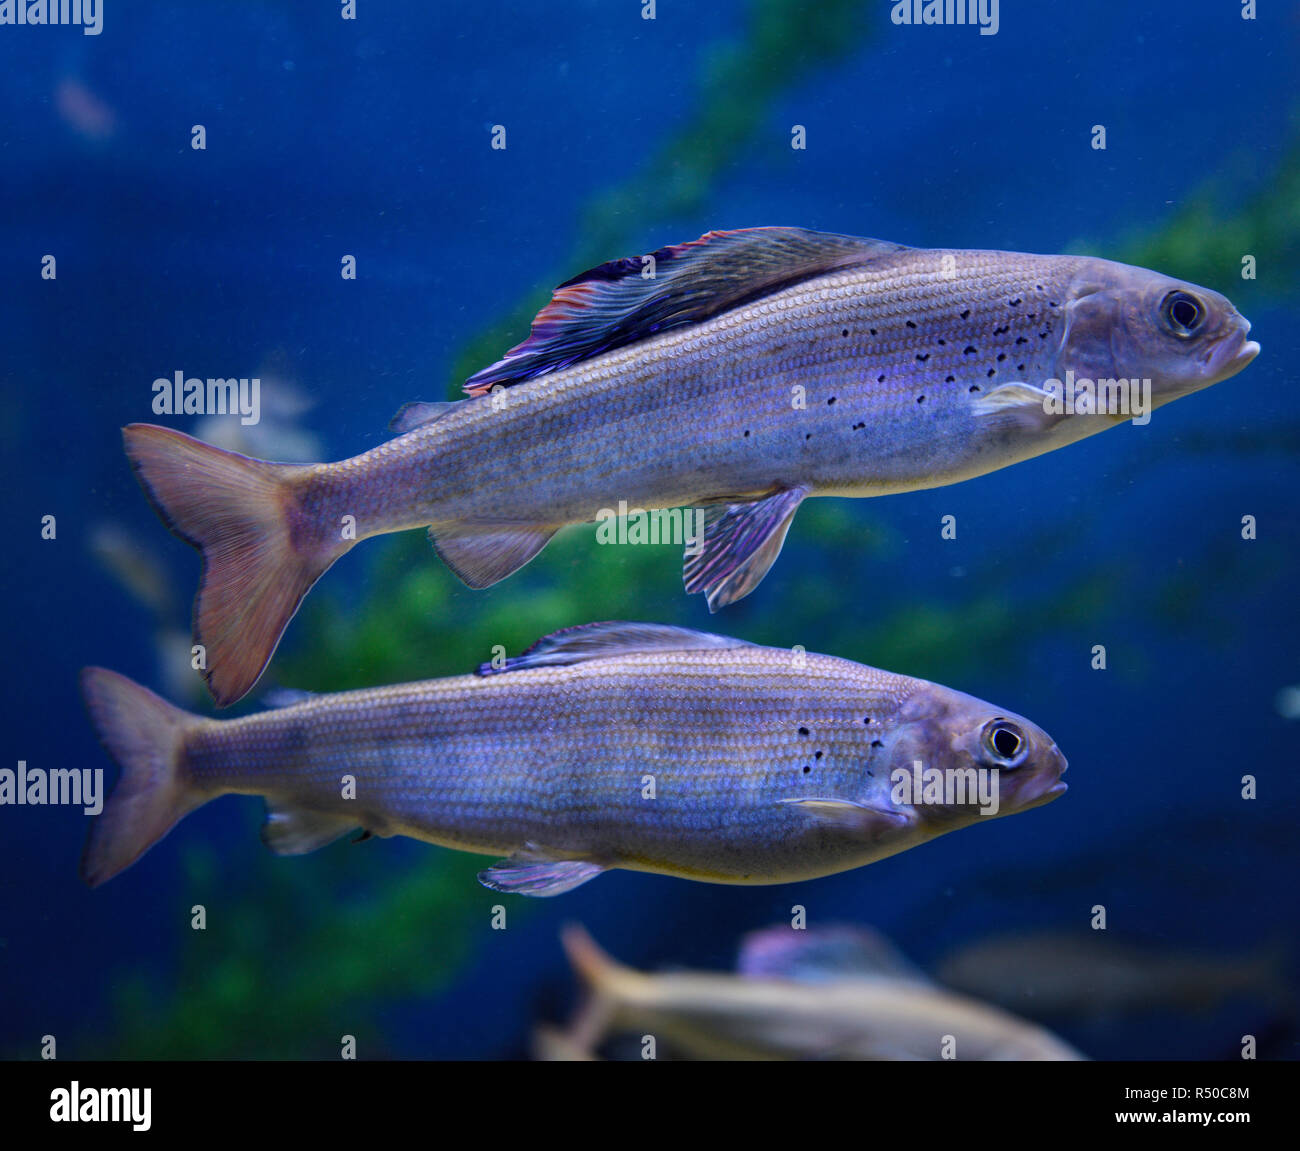 Zwei arktische Äsche mit bunten Rückenflosse kalten Süßwasser Fische schwimmen unter Wasser in einem Aquarium Stockfoto